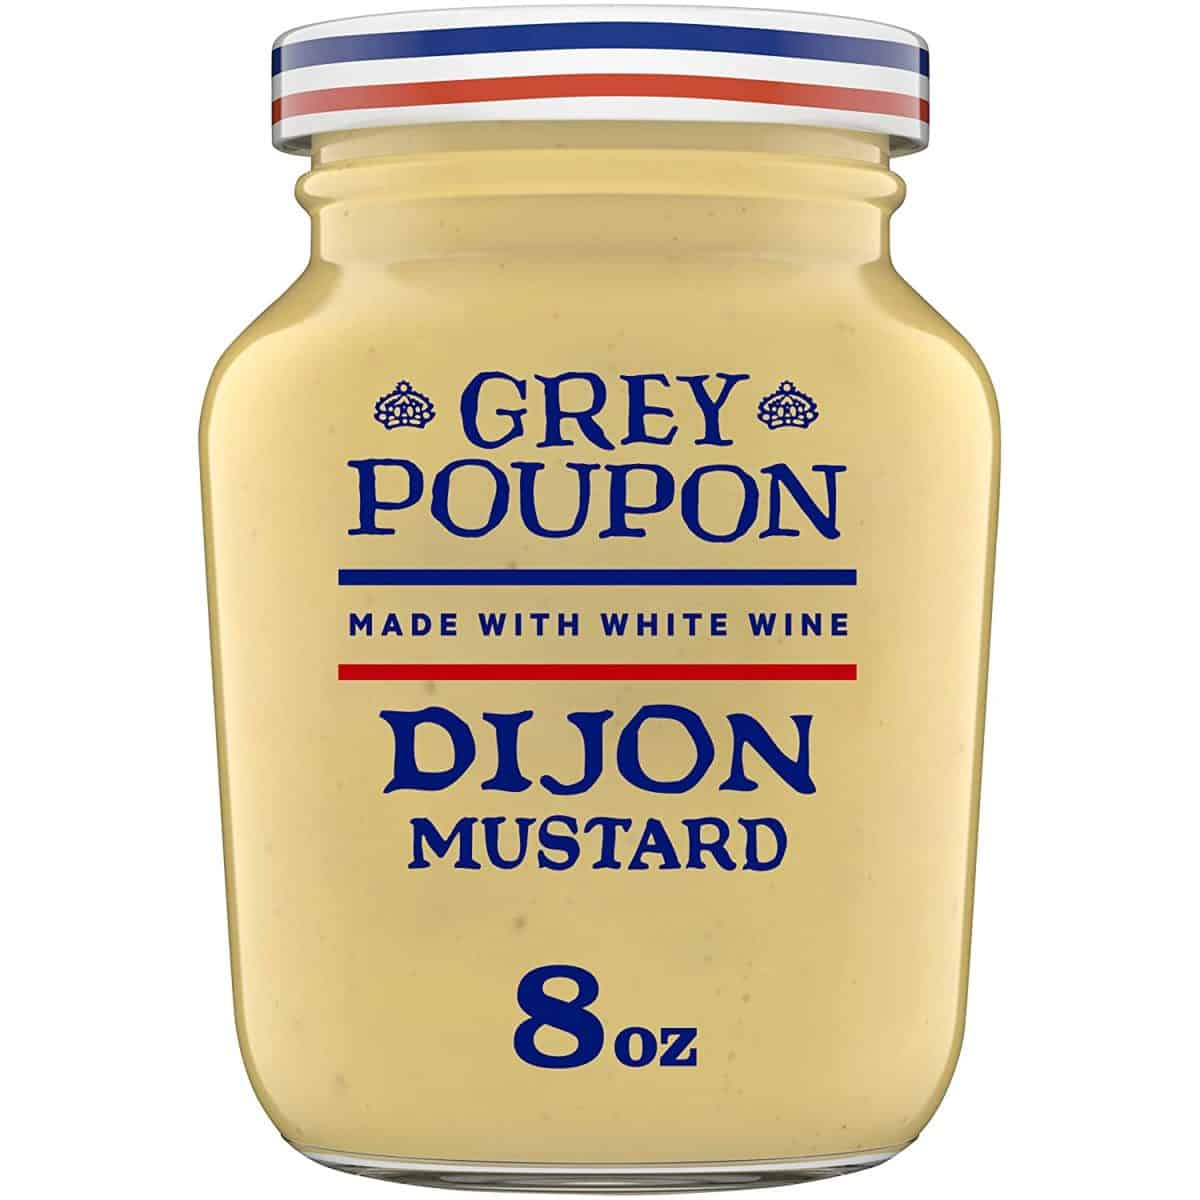 O melhor substituto para a mostarda em pó é a mostarda Dijon